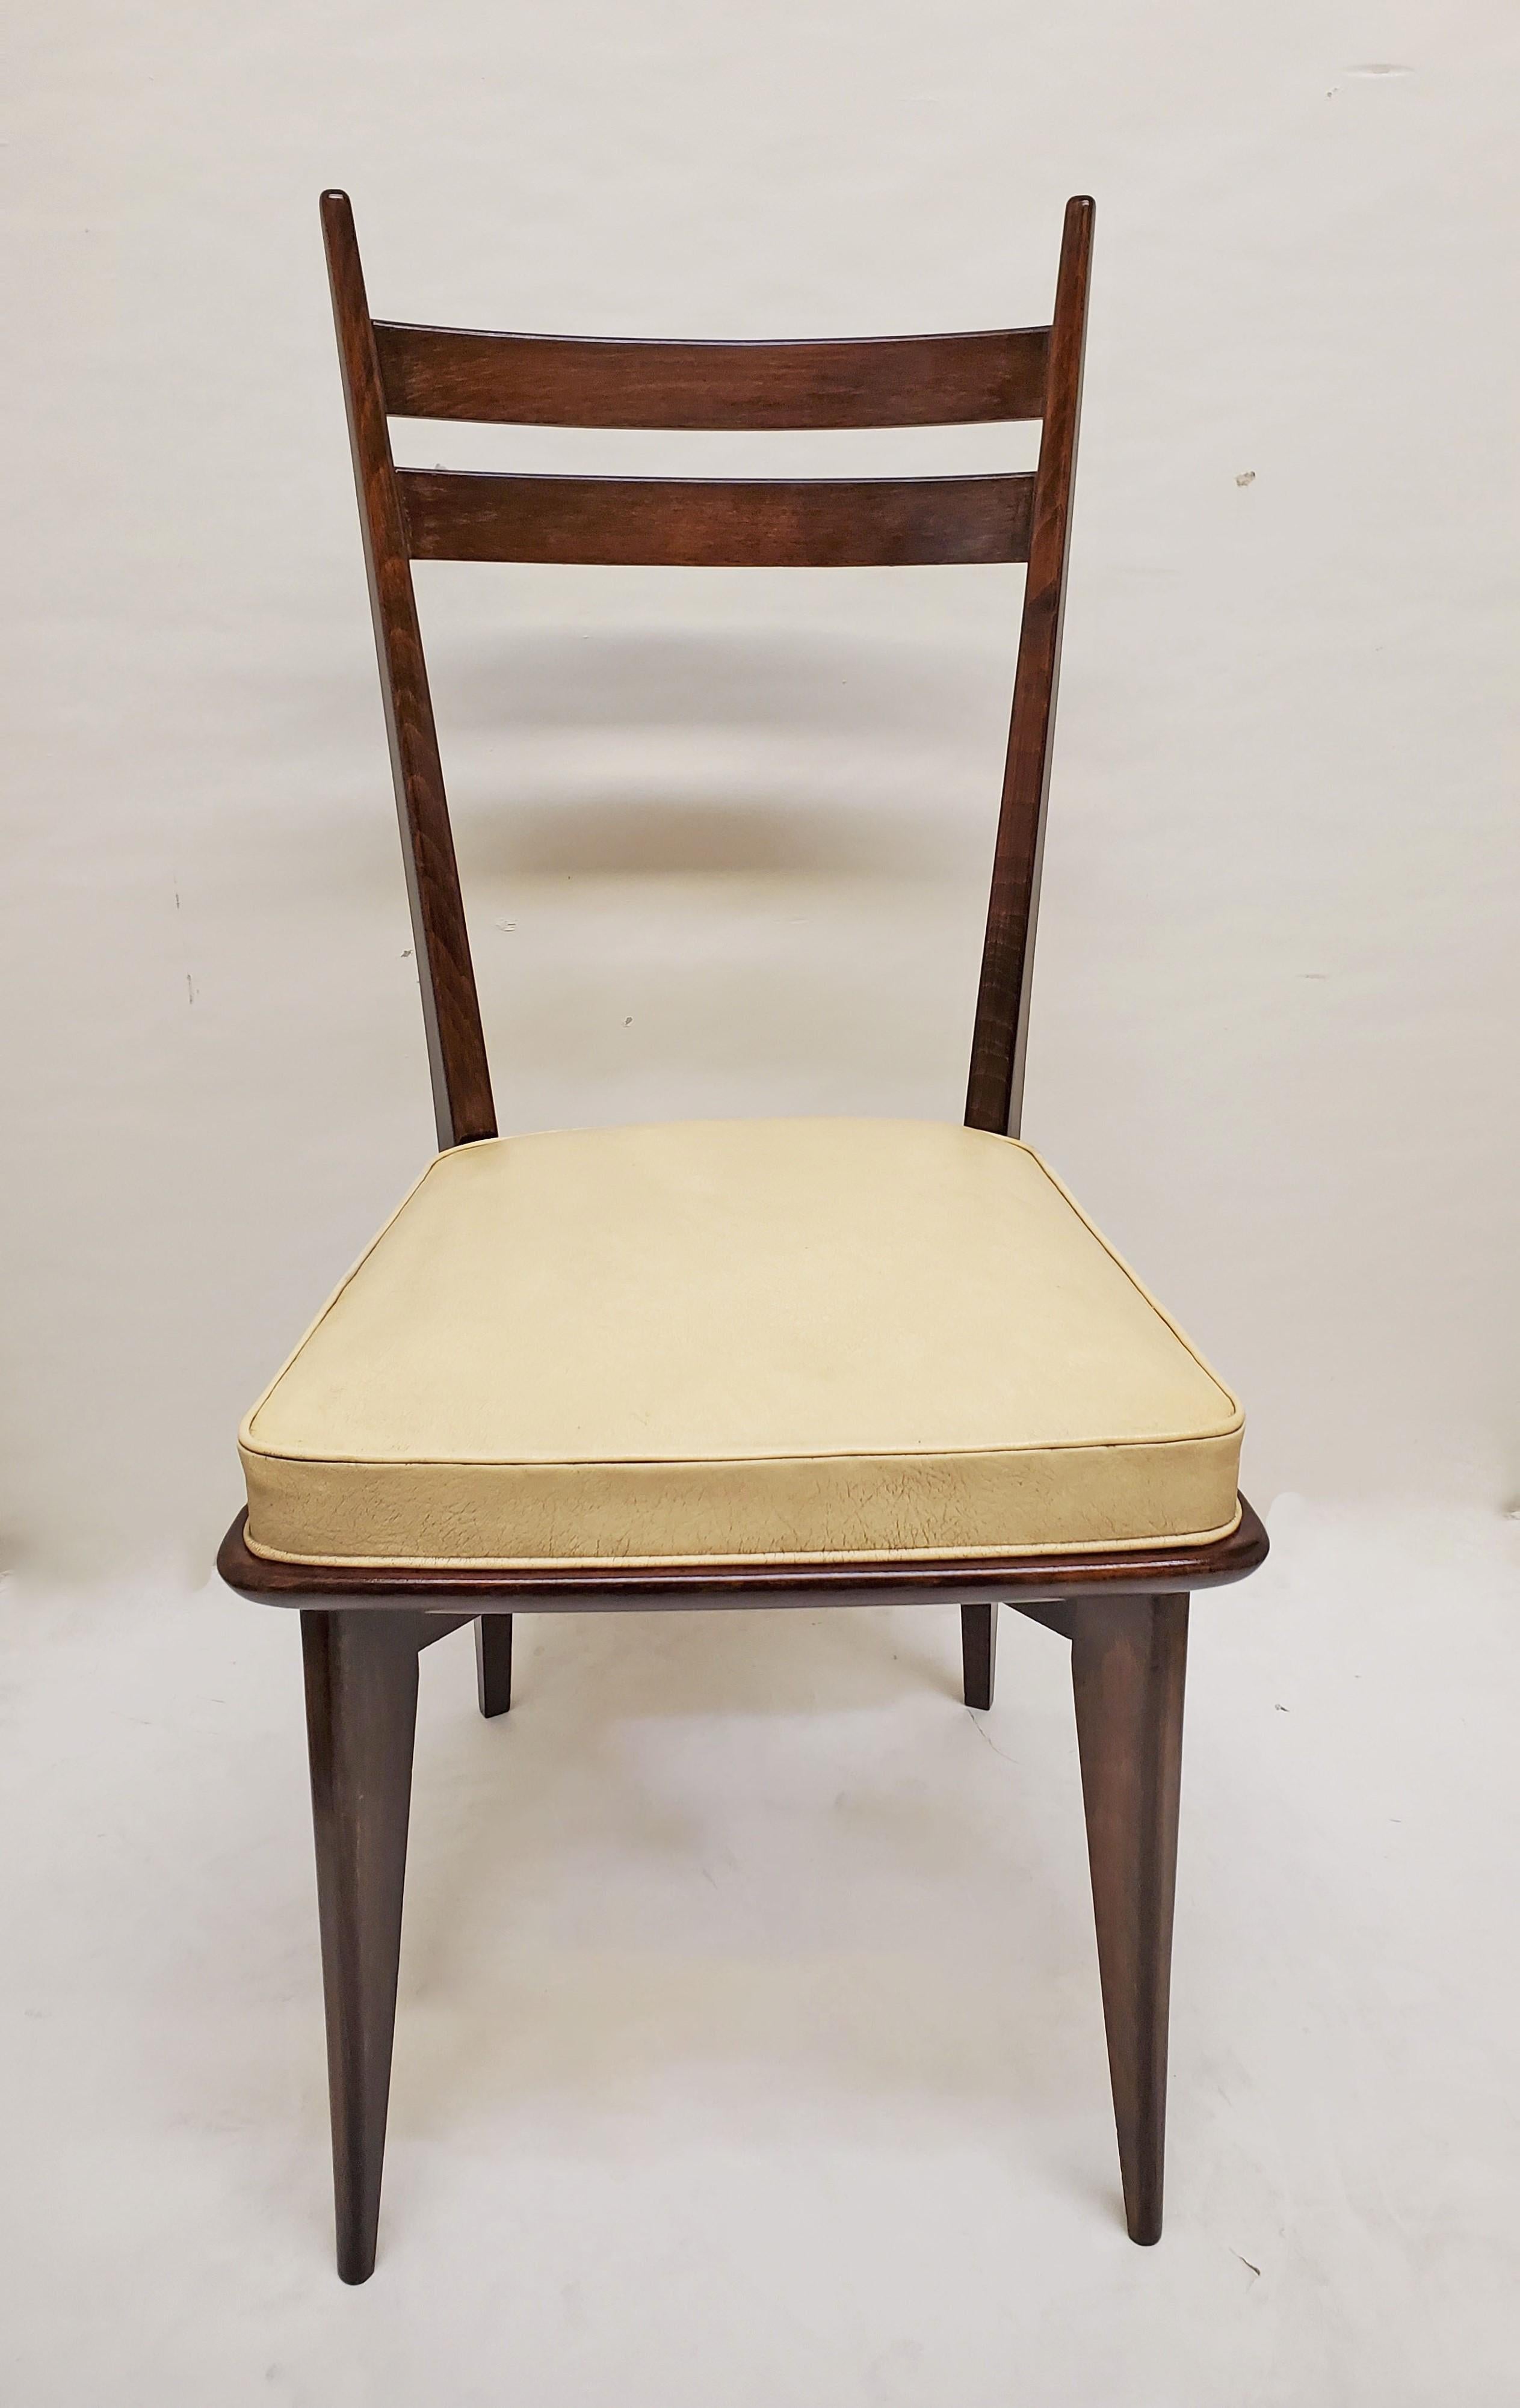 Satz von sechs originalen französischen modernistischen Esszimmerstühlen mit offenem, luftigem Gestell.
Hohe Rückenlehnen mit abgerundeten vertikalen Pfosten und horizontalen Latten schaffen einen dramatischen und ästhetischen negativen Raum